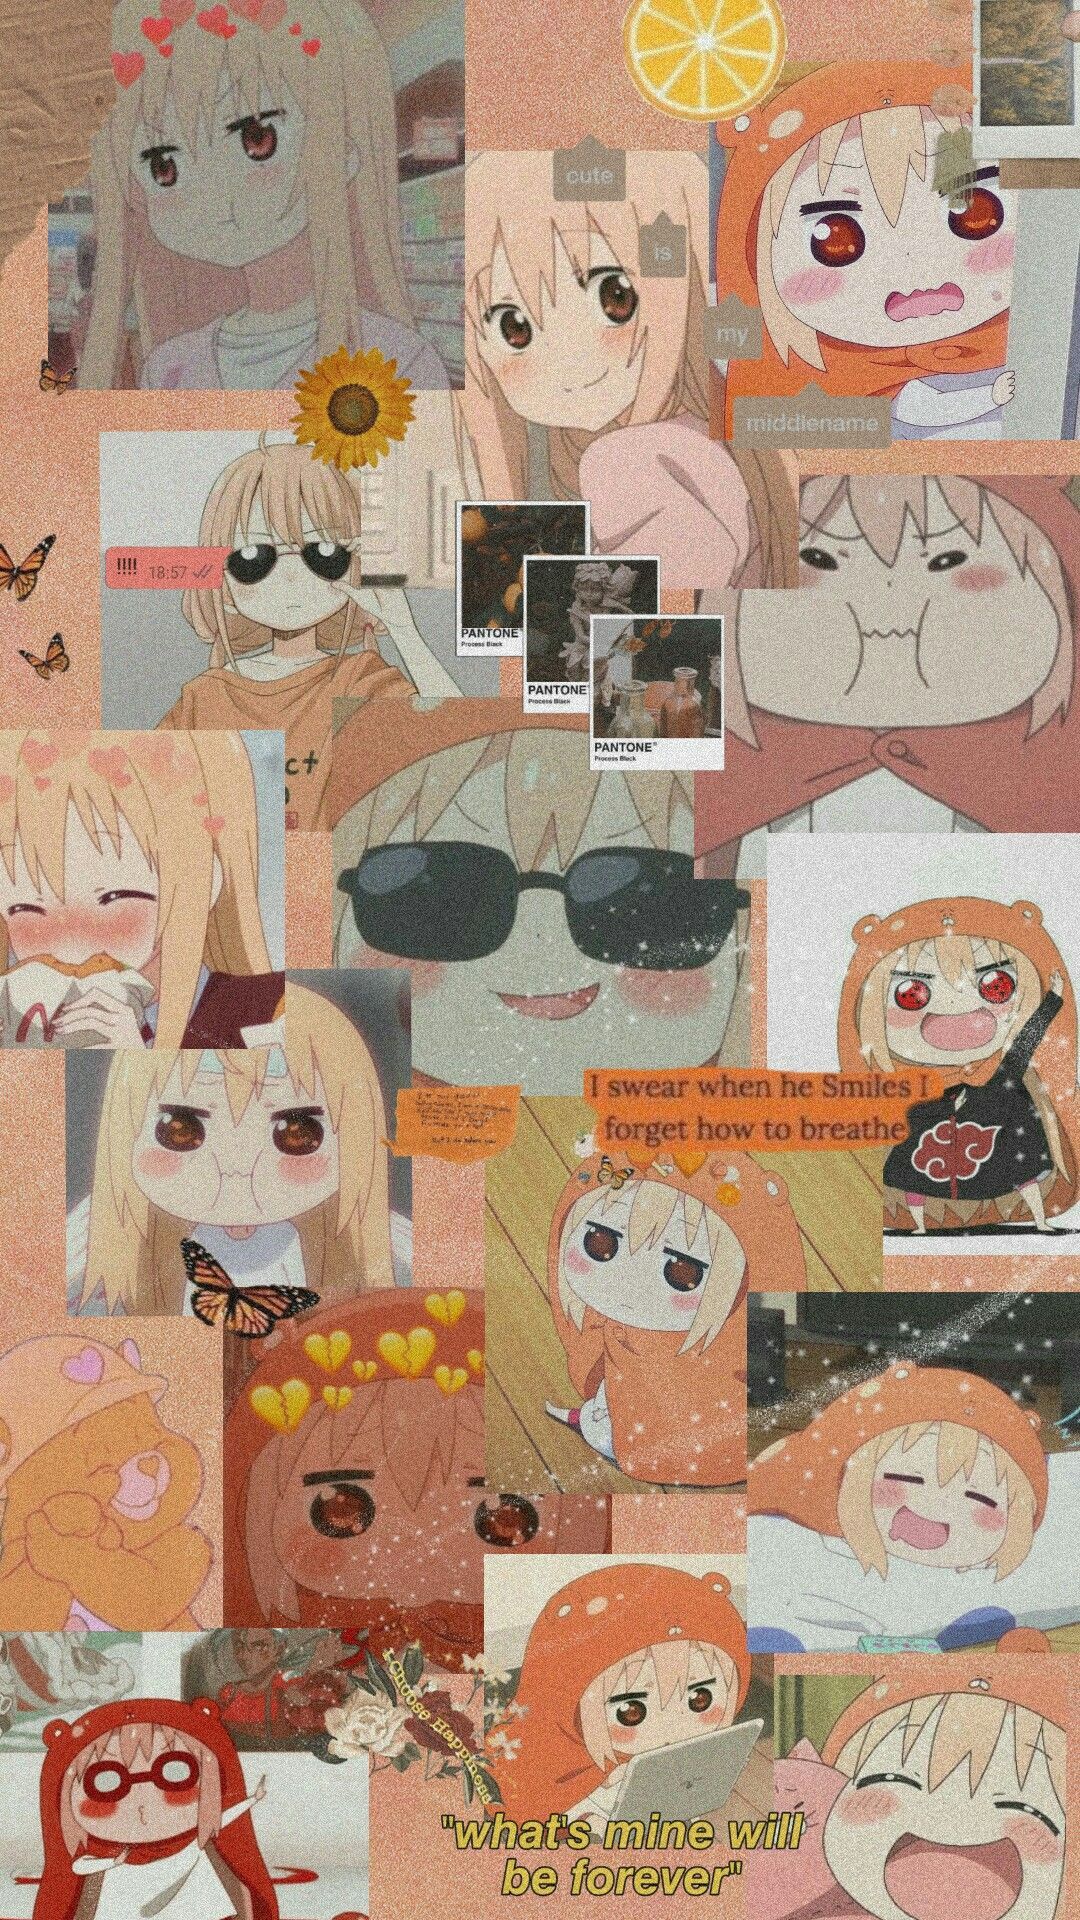 Aesthetic anime wallpaper. Anime wallpaper, Aesthetic iphone wallpaper, Anime